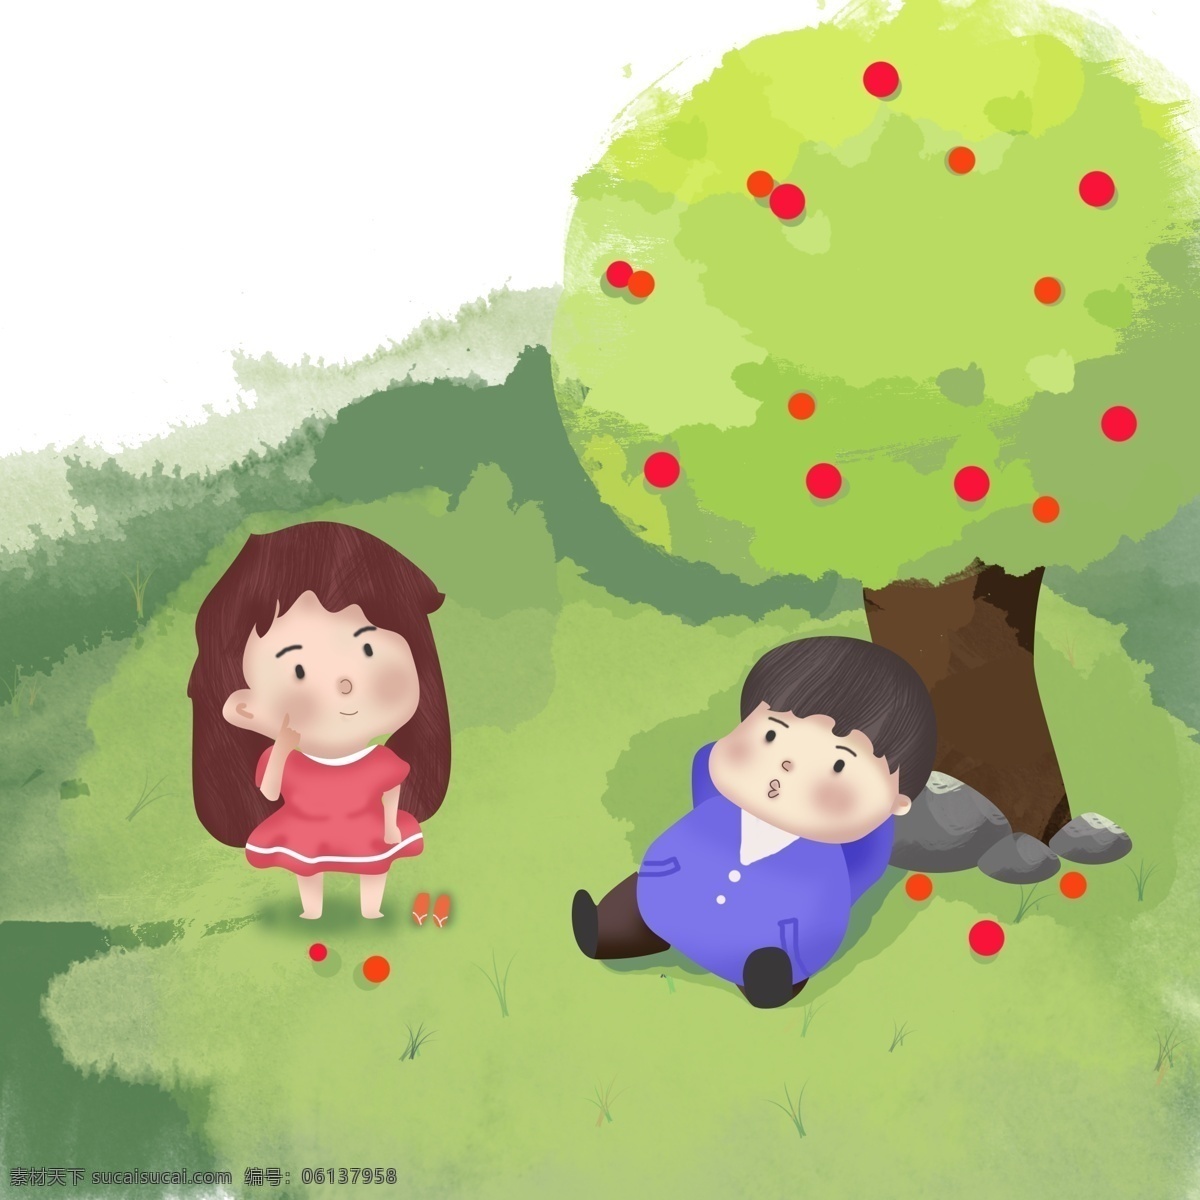 秋季 出游 旅游 郊游 两小无猜 男孩 女孩 卡通 可爱 手绘 果子 植物 草坪 大树 出行